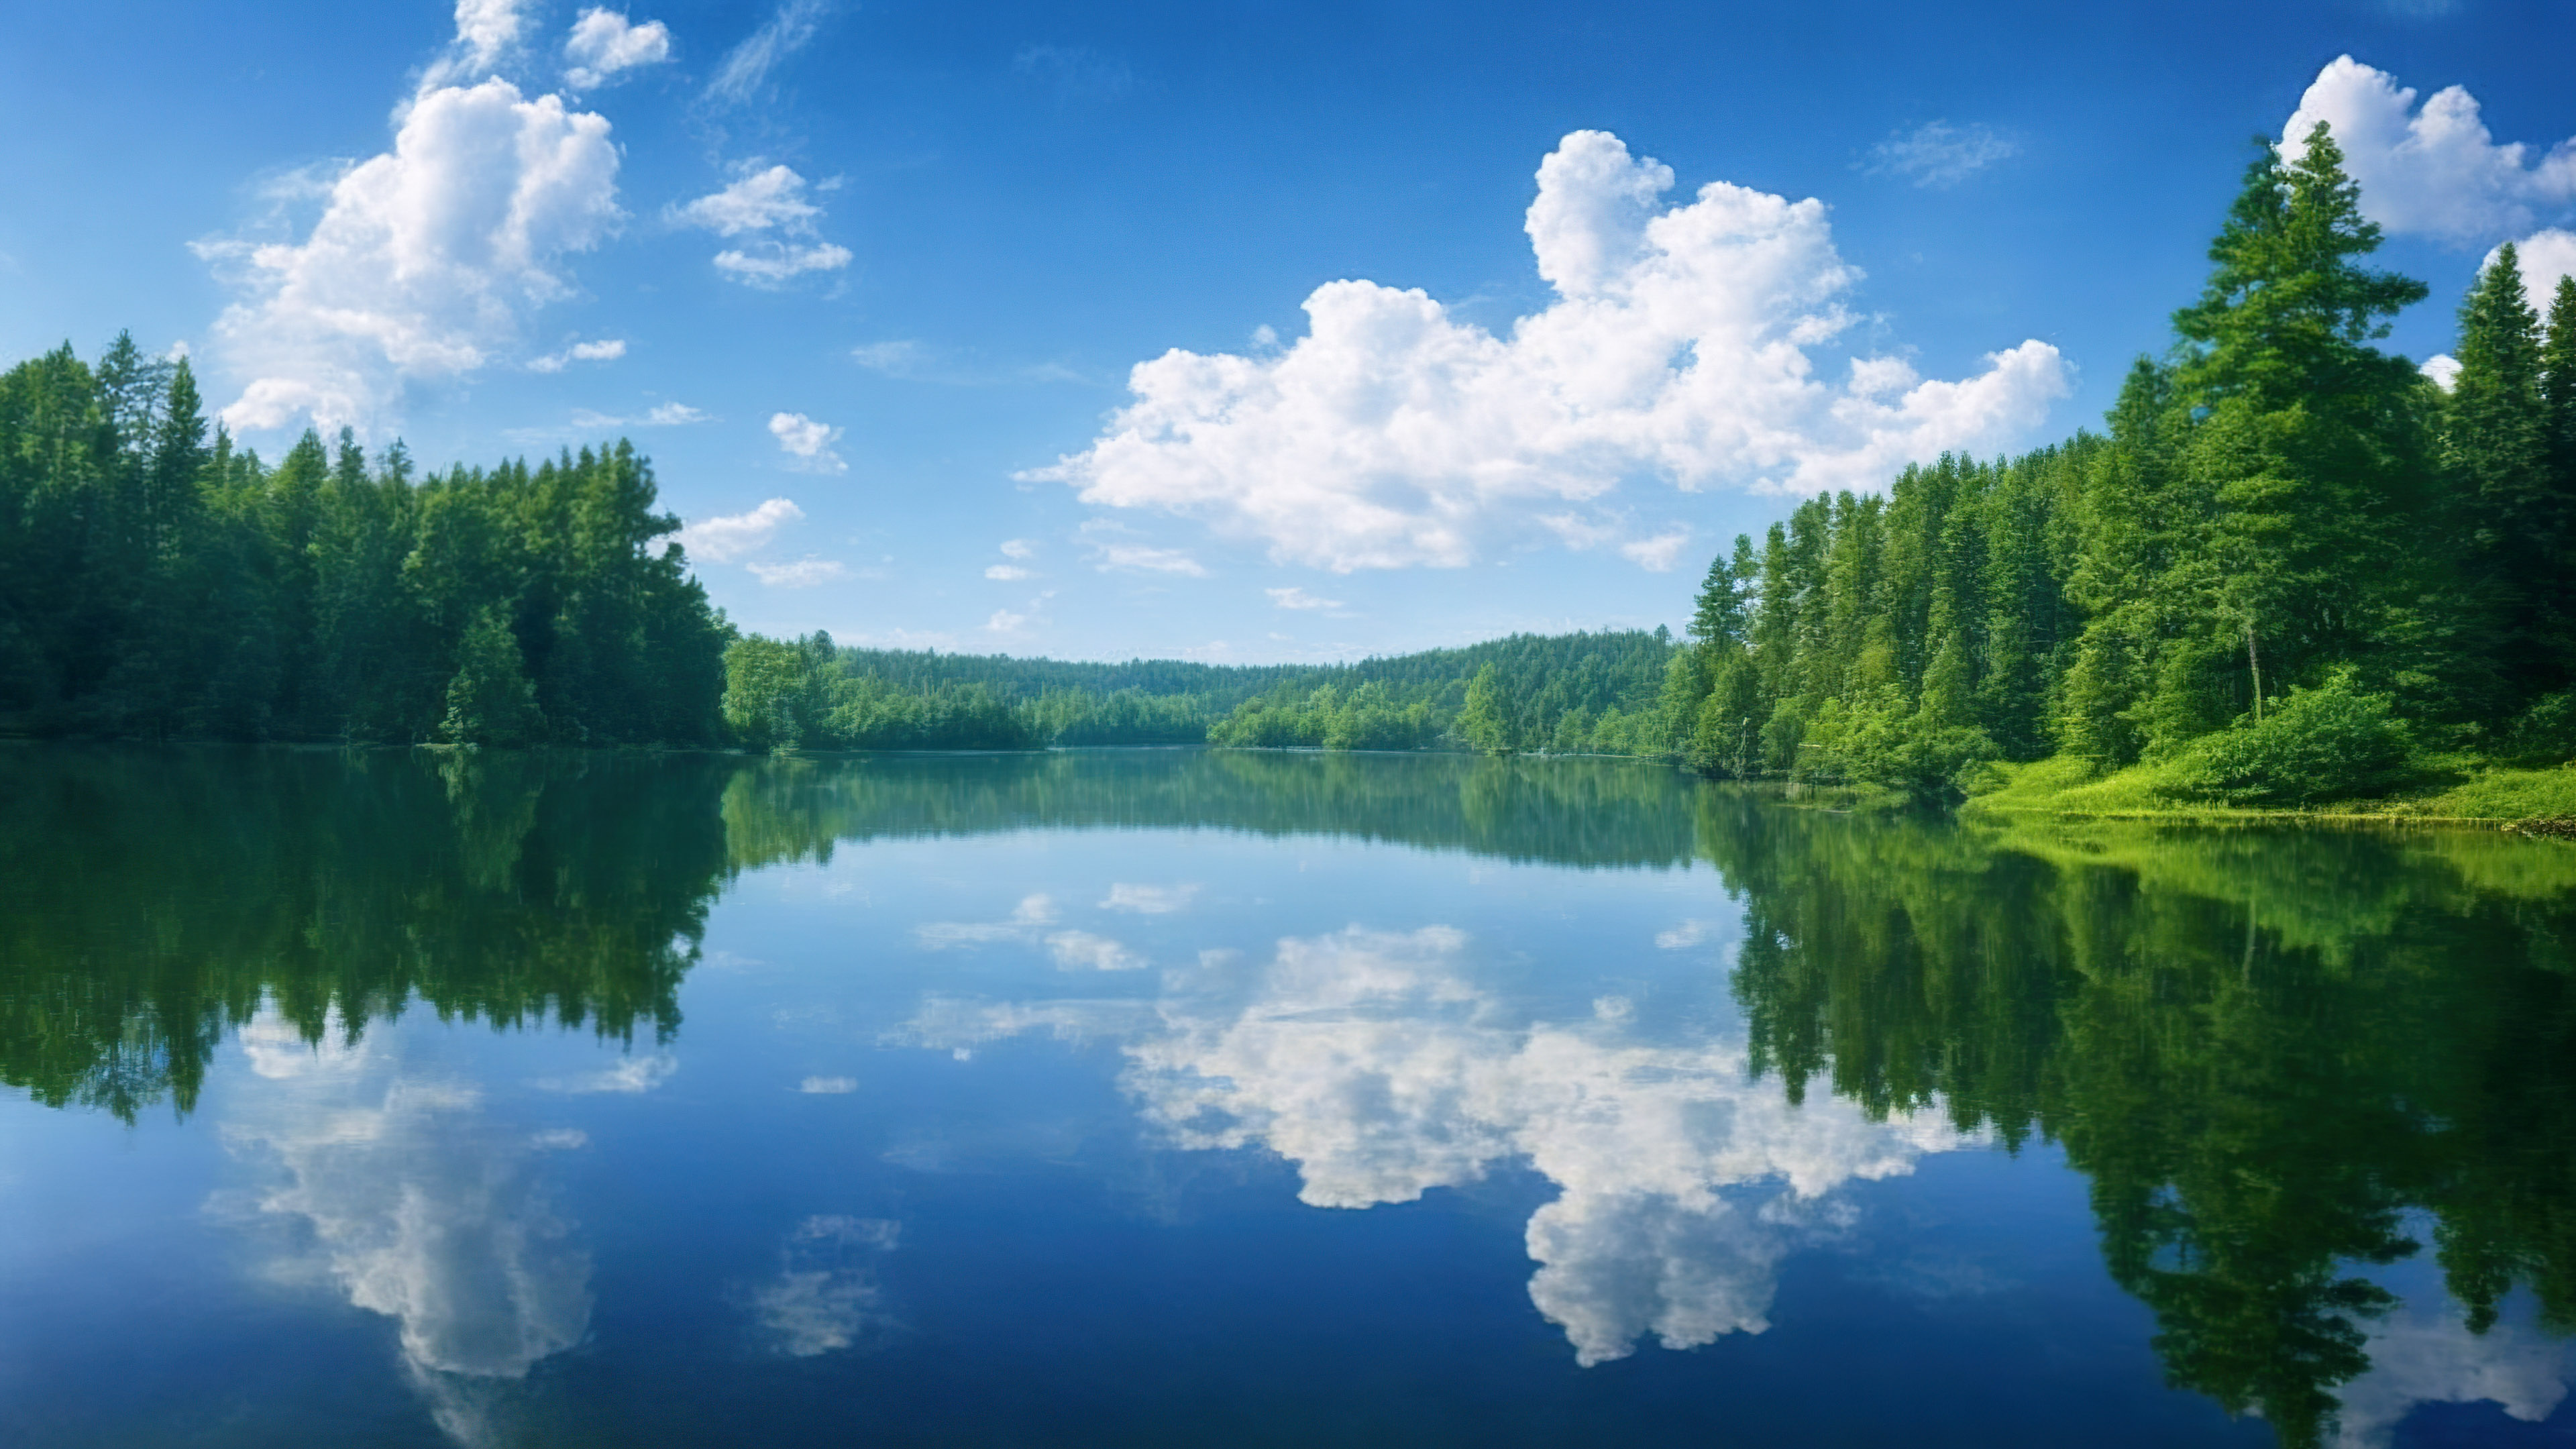 Capturez la sérénité d'un lac paisible reflétant un ciel parsemé de nuages, entouré de forêts verdoyantes avec notre fond d'écran d'arbre en 4K.